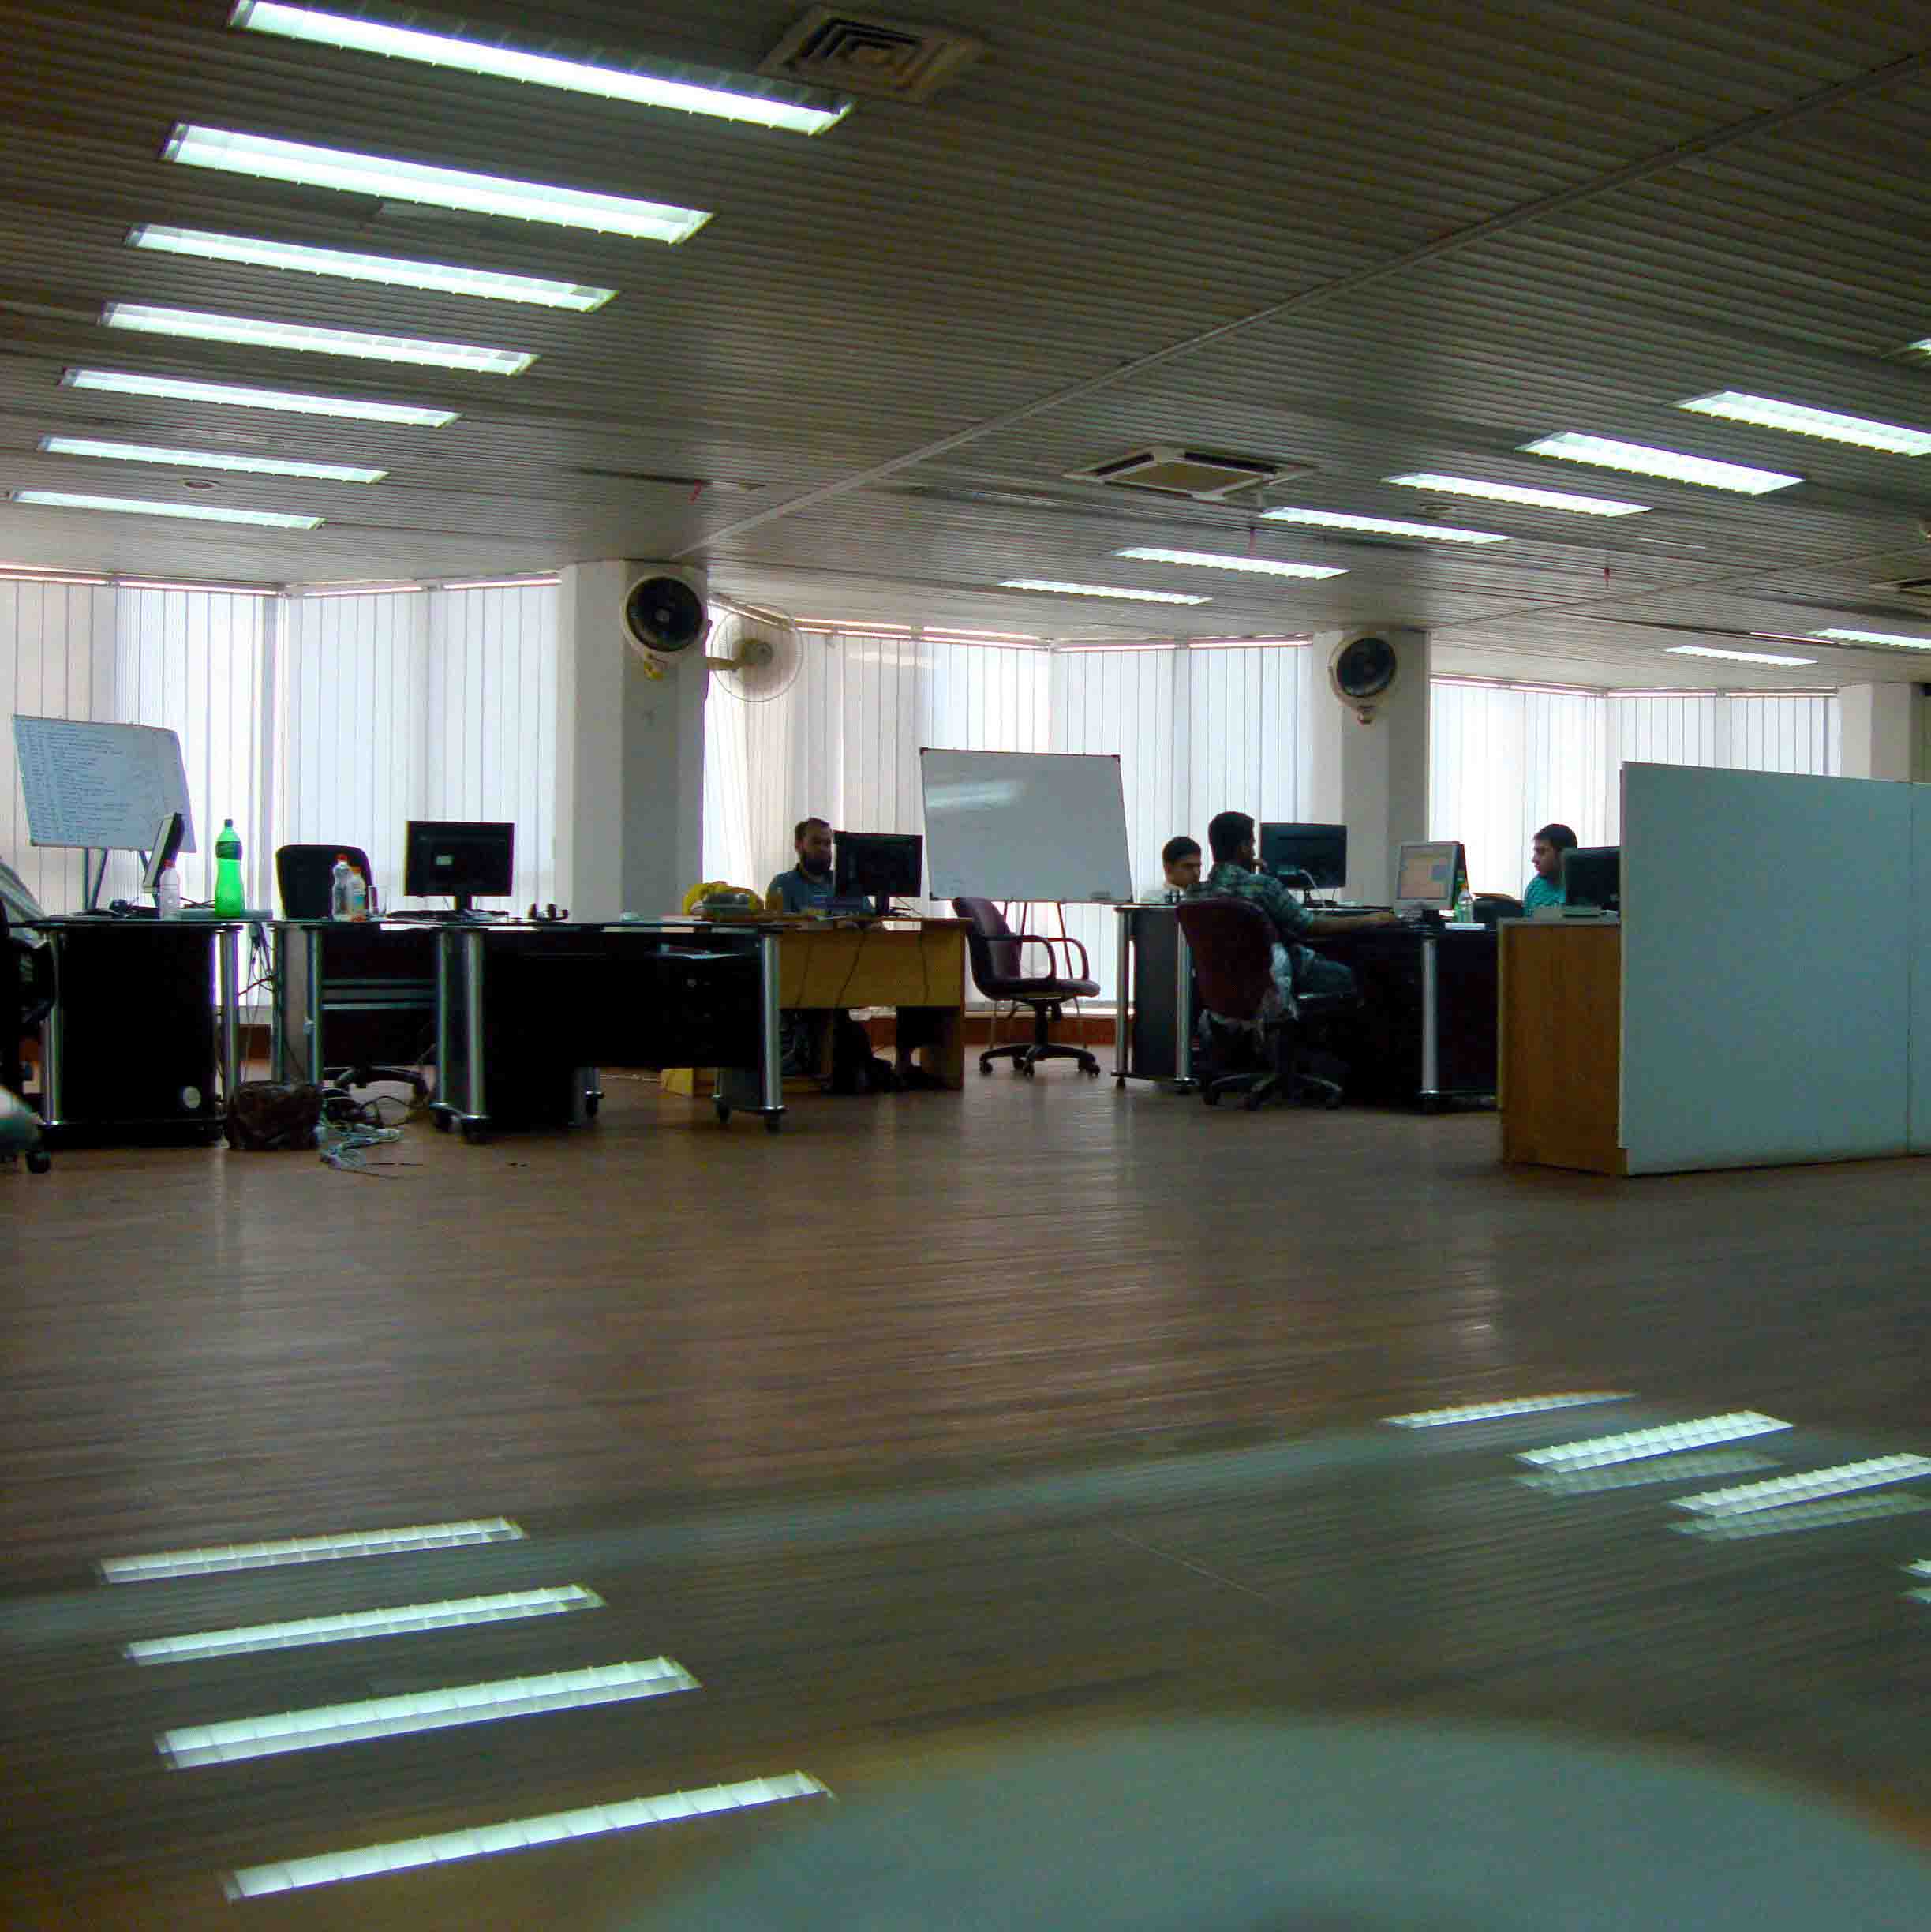 2009 Workplace 2.0 Floor